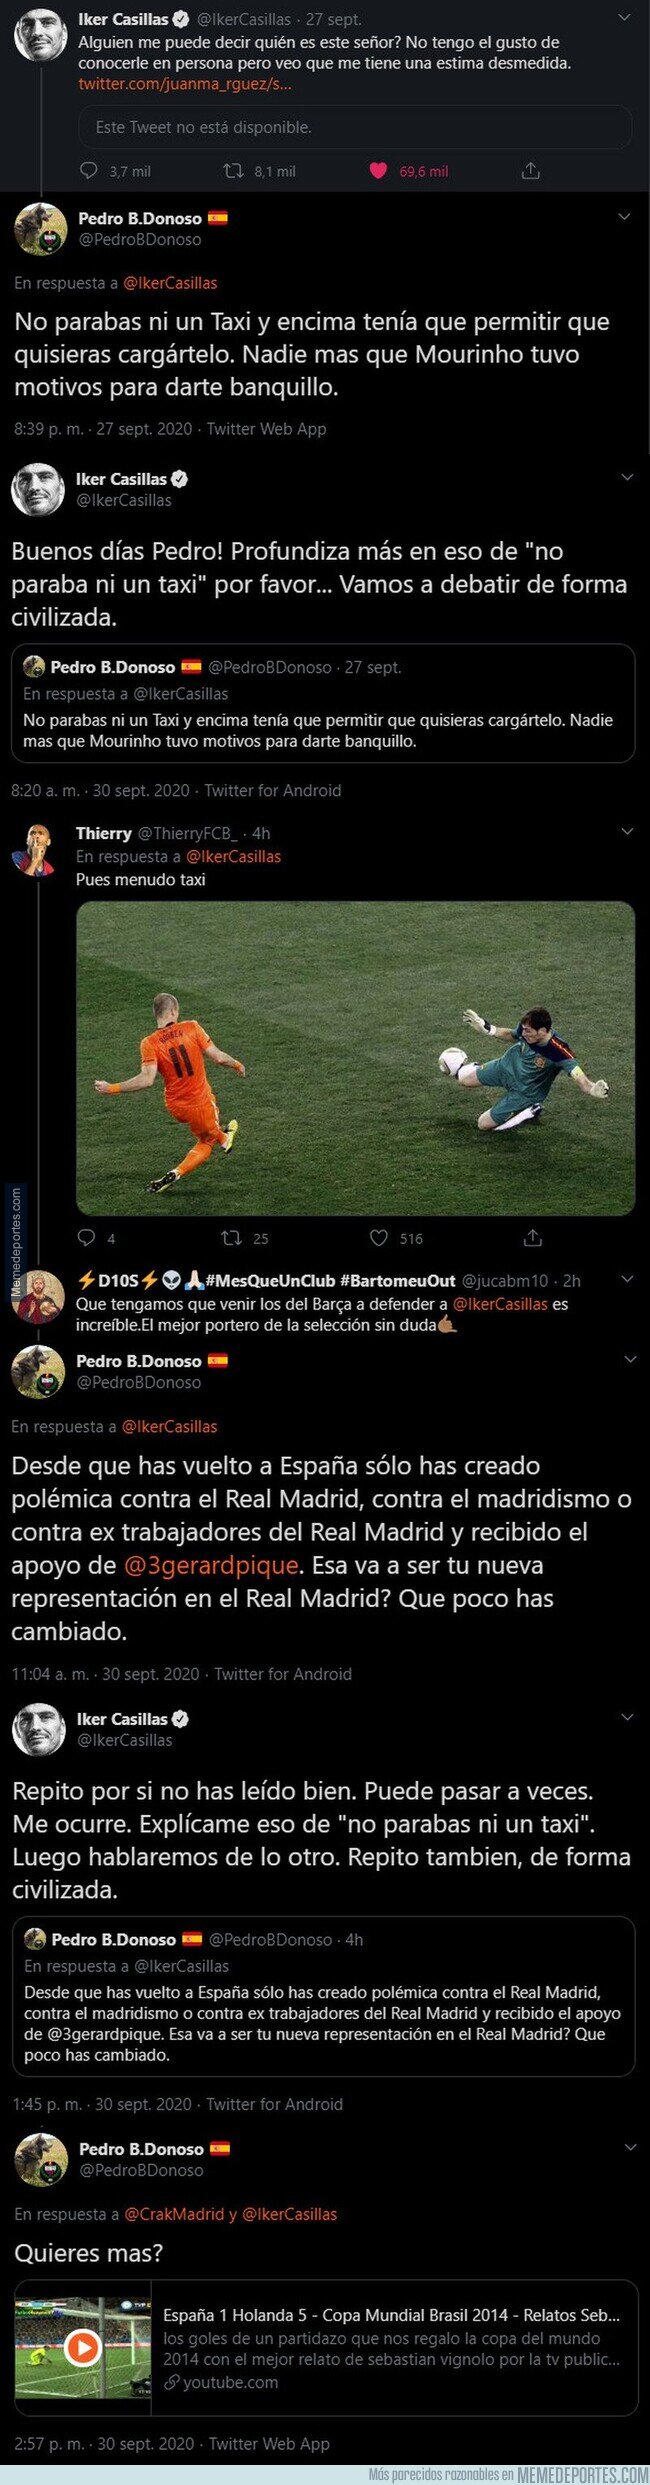 1116915 - Iker Casillas se ve envuelto en una pelea tuitera con un seguidor Madridista fanboy de Mourinho que queda realmente mal